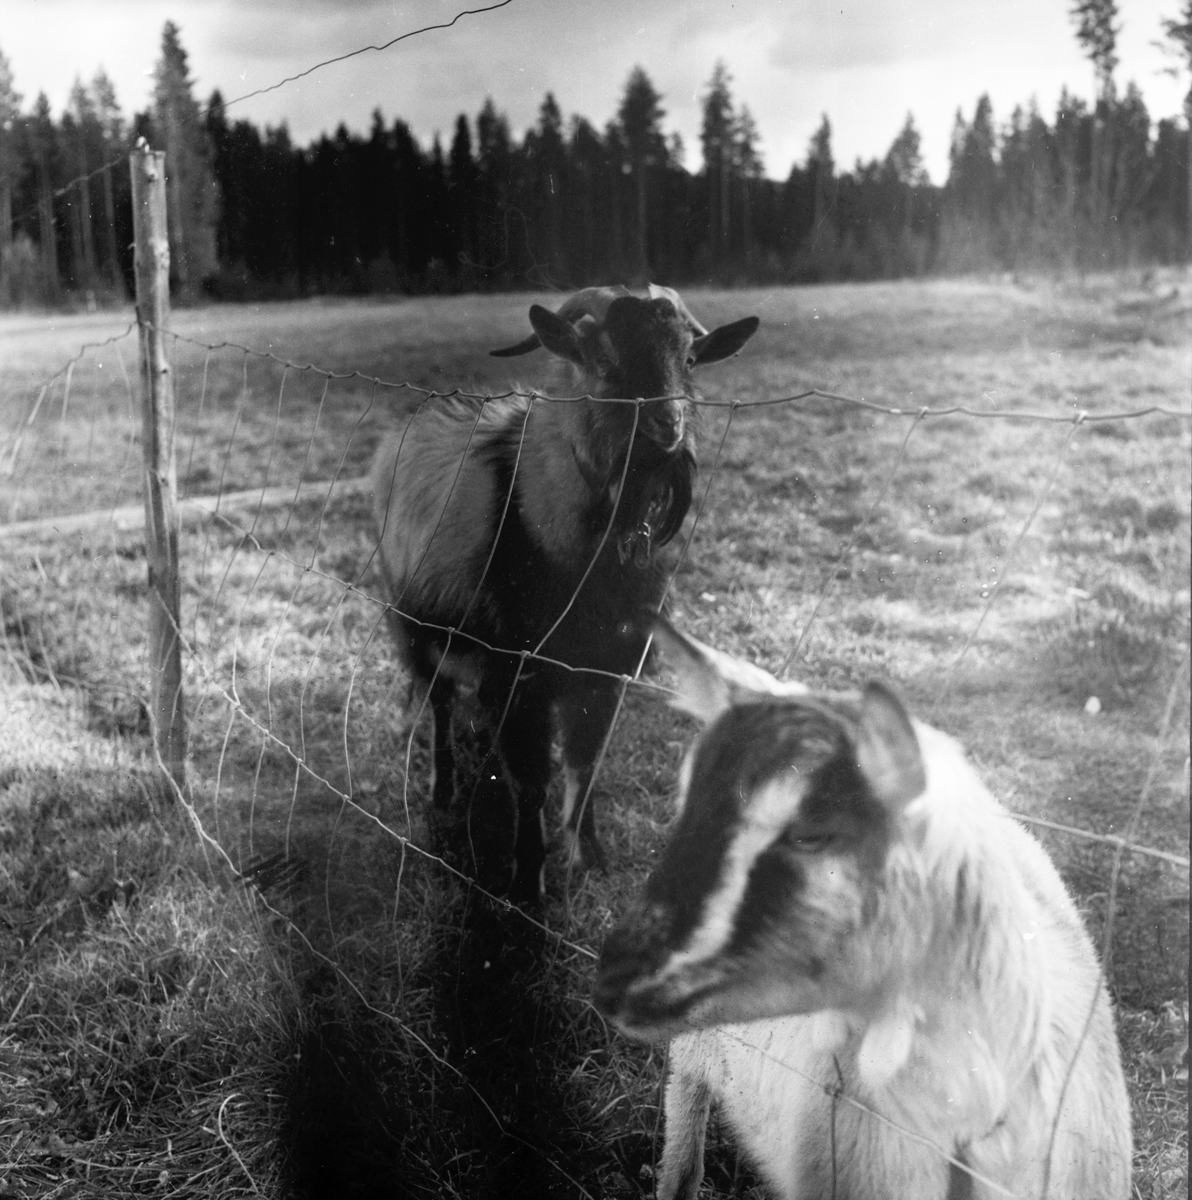 Elin och Holger småbrukare
Björnbacken
Oktober 1972